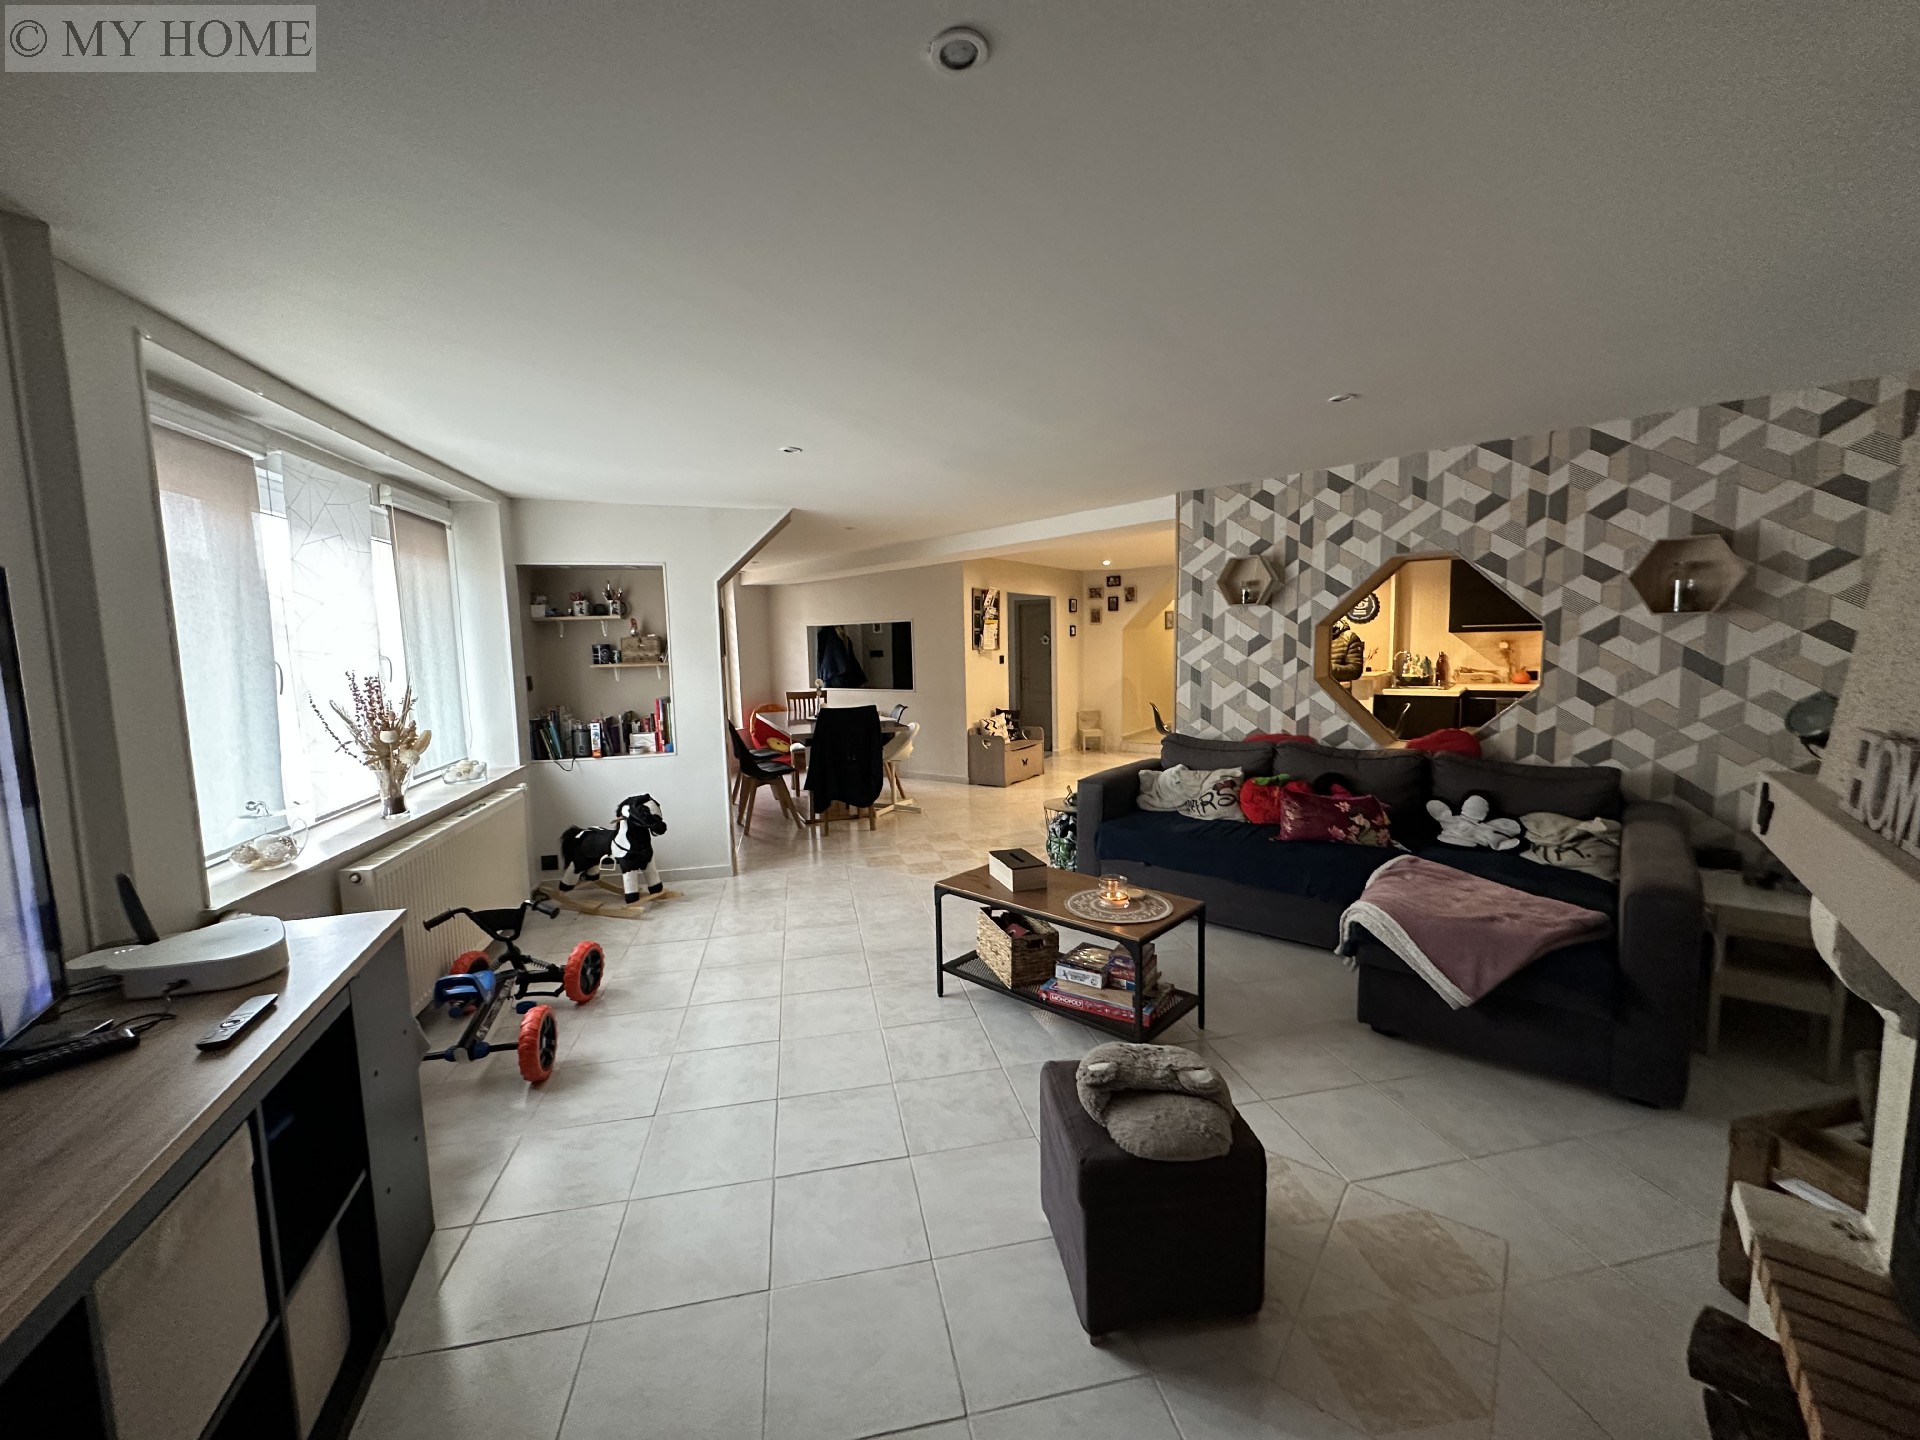 Vente appartement - TOUL 130 m², 5 pièces